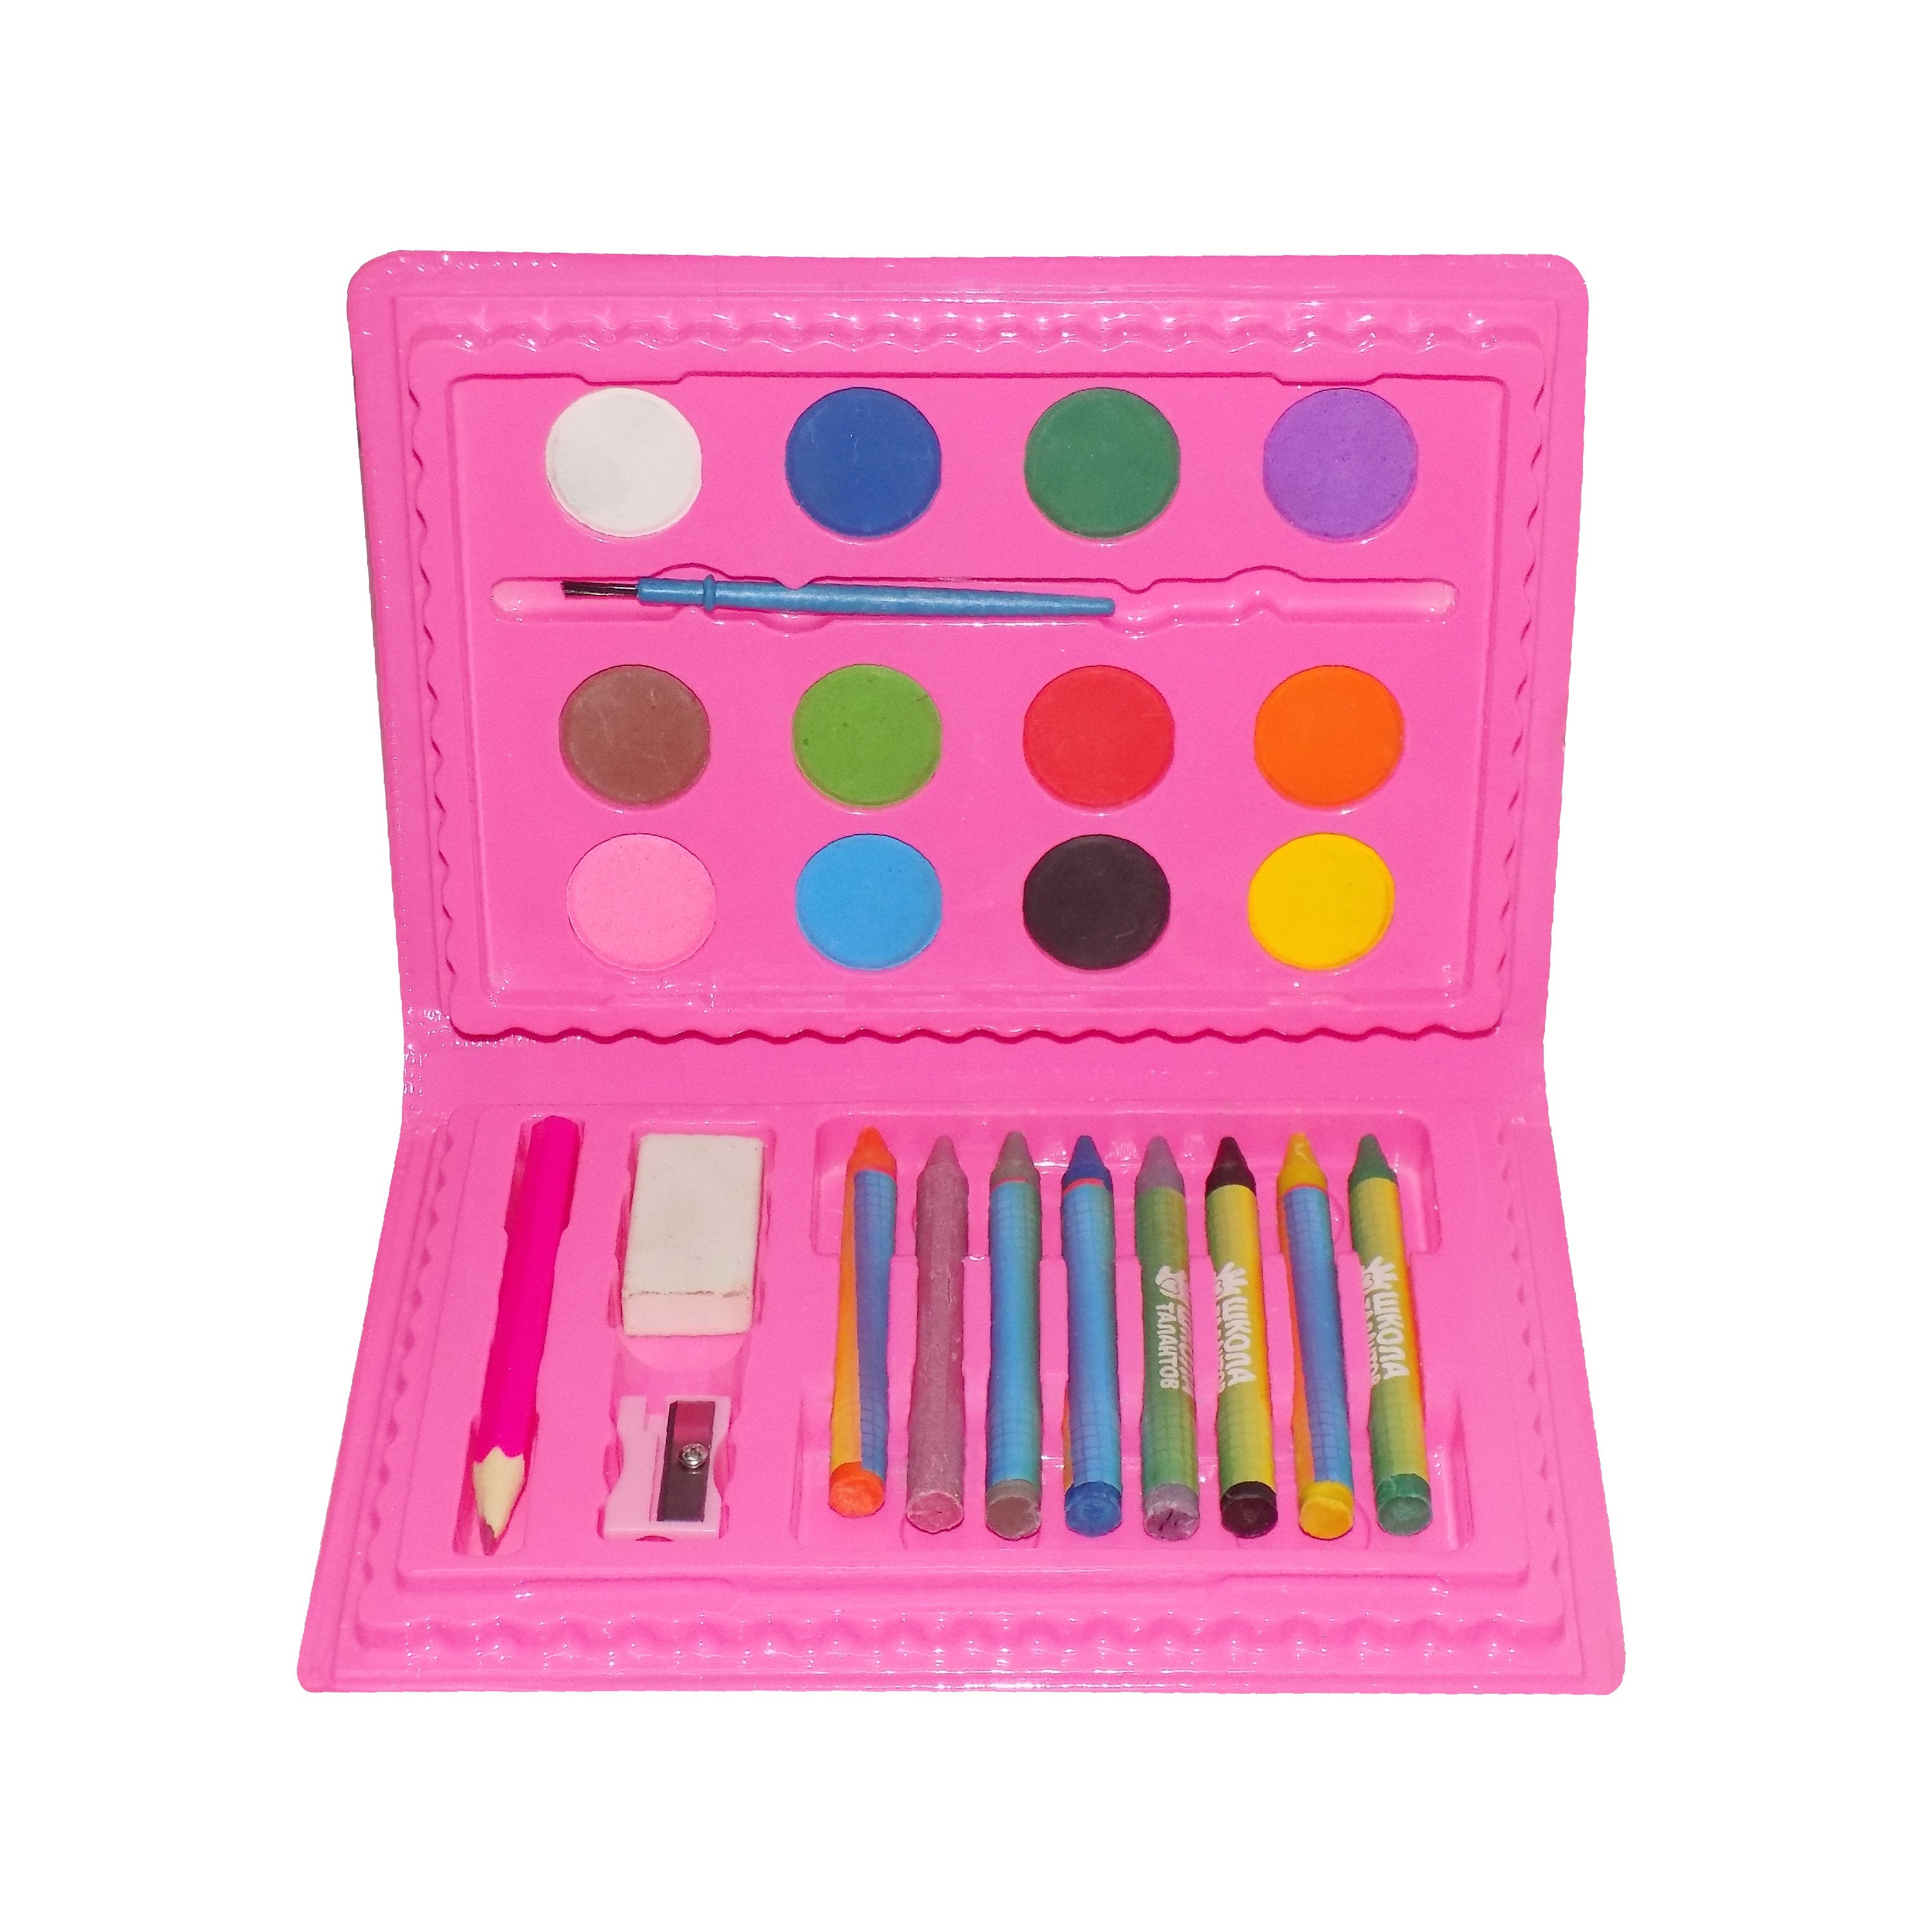 1091 Art Colour Kit Colours Box, (24 Pieces) - SkyShopy